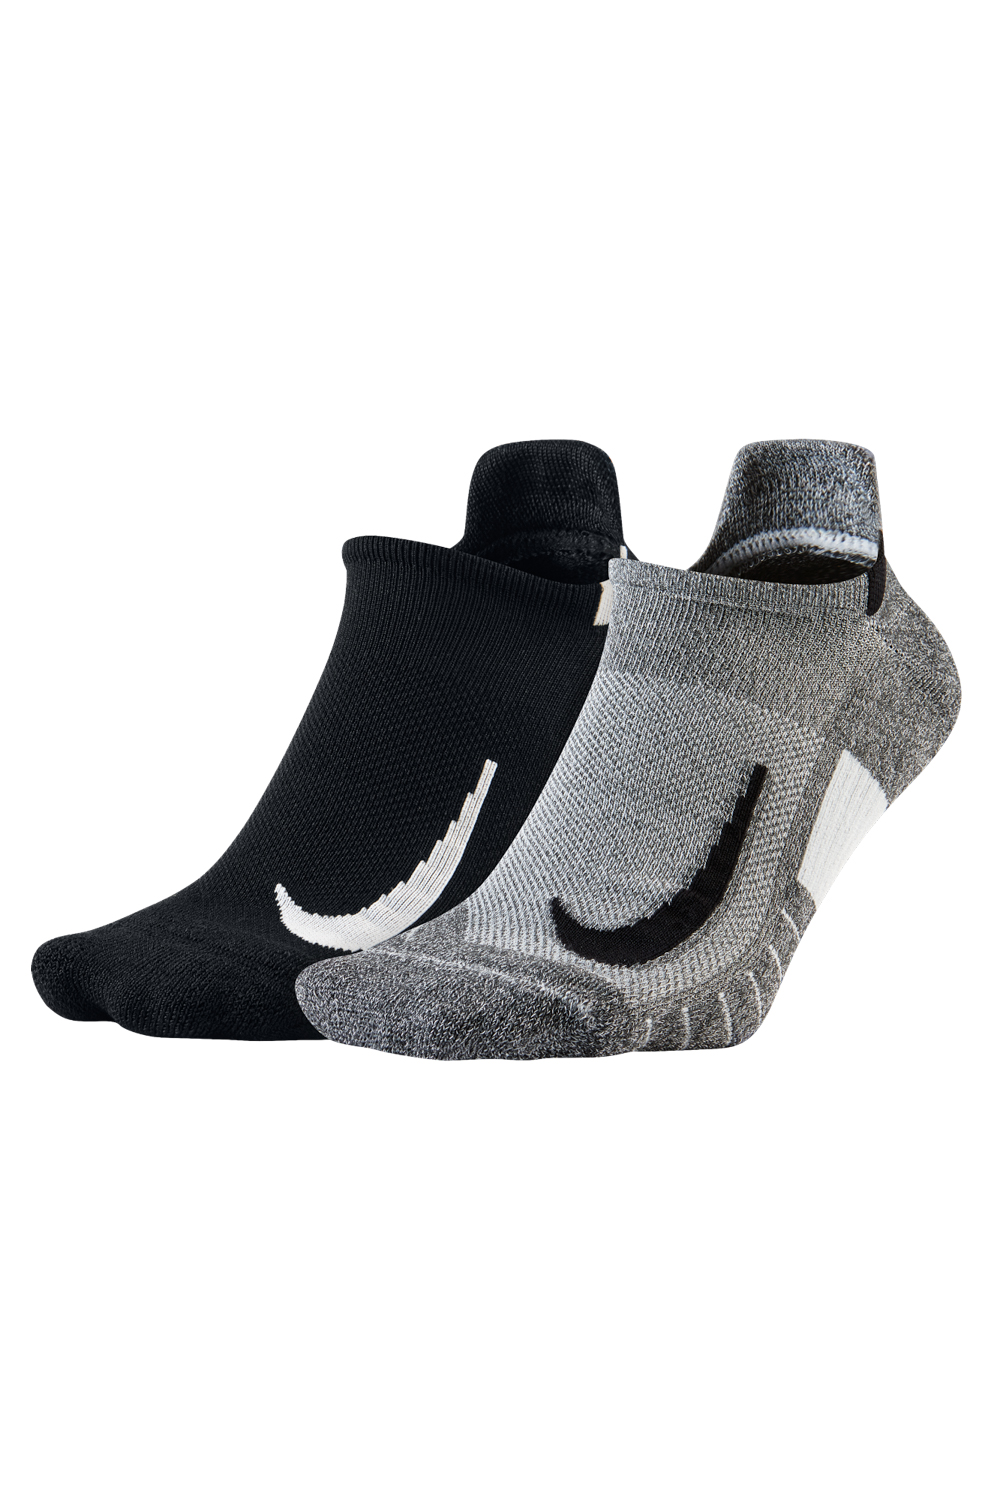 NIKE - Κάλτσες Nike Multiplier σετ των 2 γκρι - μαύρο Ανδρικά/Αξεσουάρ/Κάλτσες